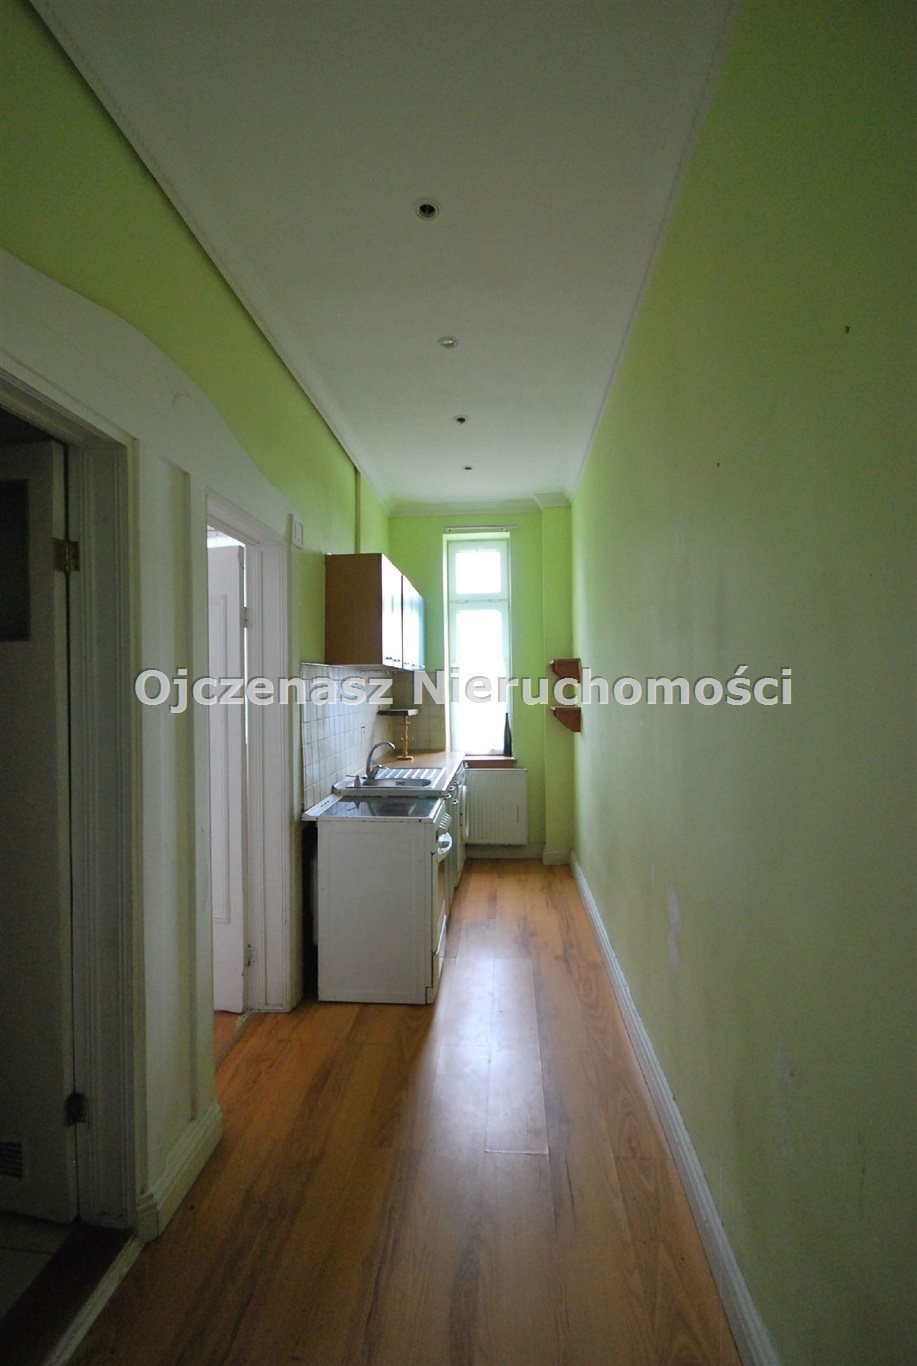 Mieszkanie trzypokojowe na sprzedaż Solec Kujawski  79m2 Foto 8